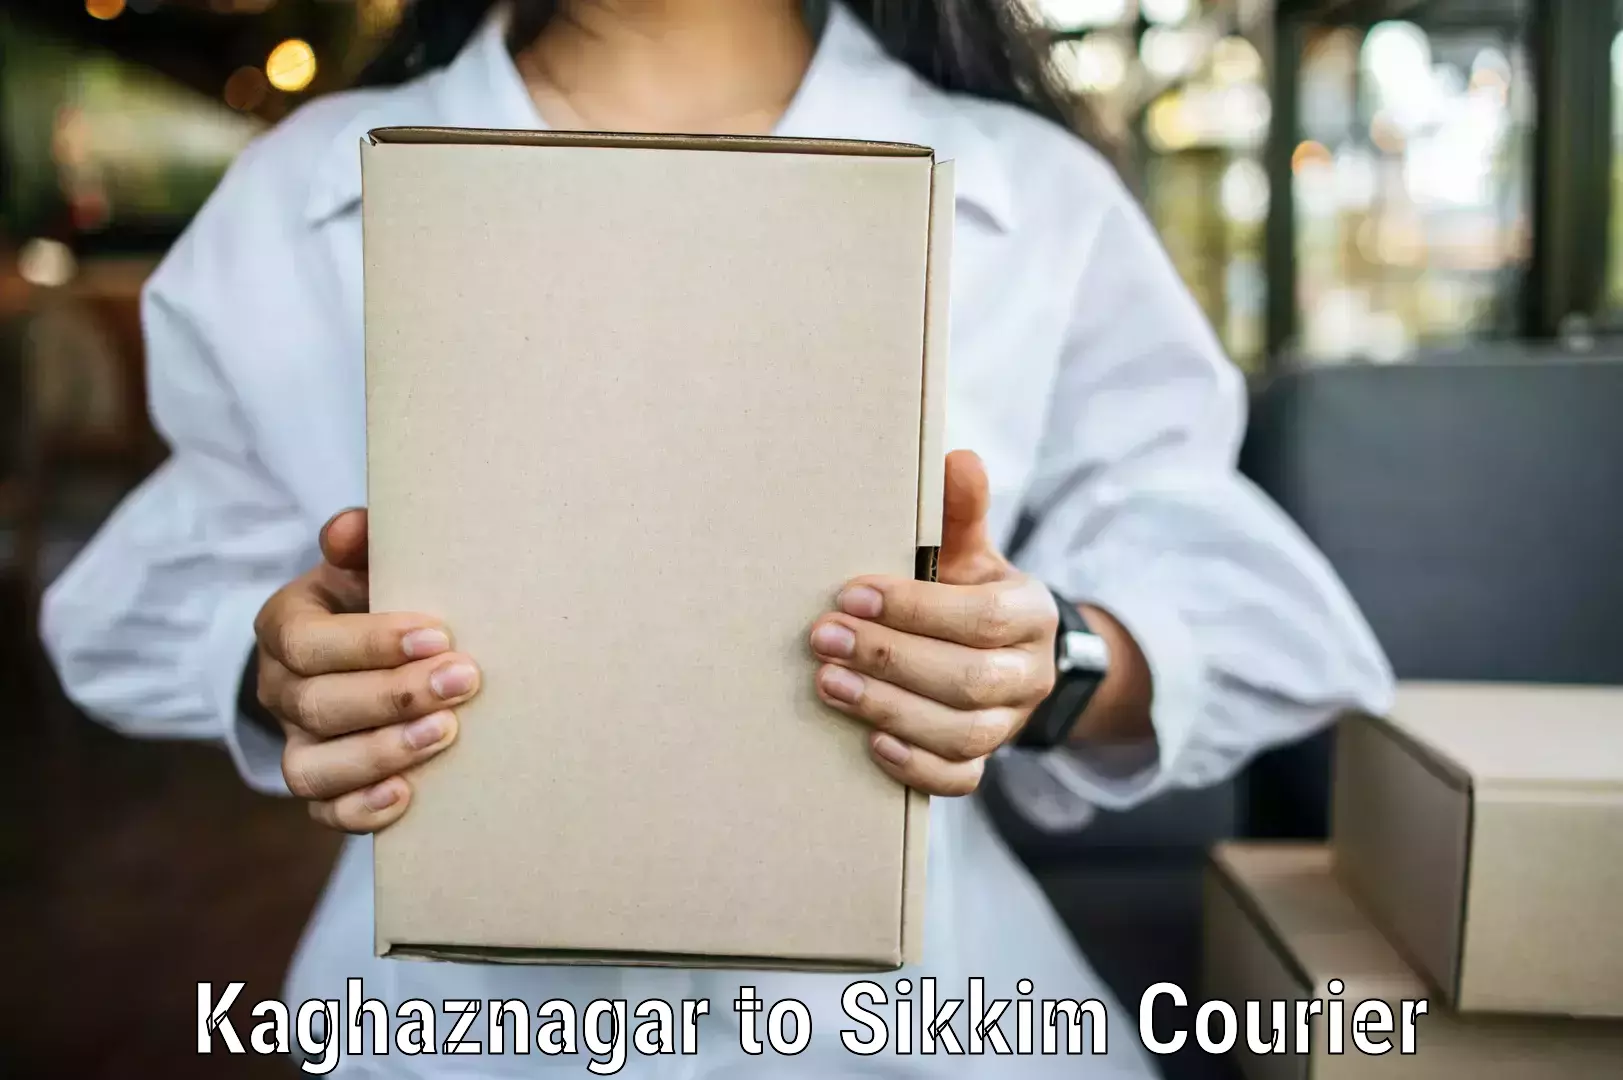 Urgent courier needs Kaghaznagar to North Sikkim